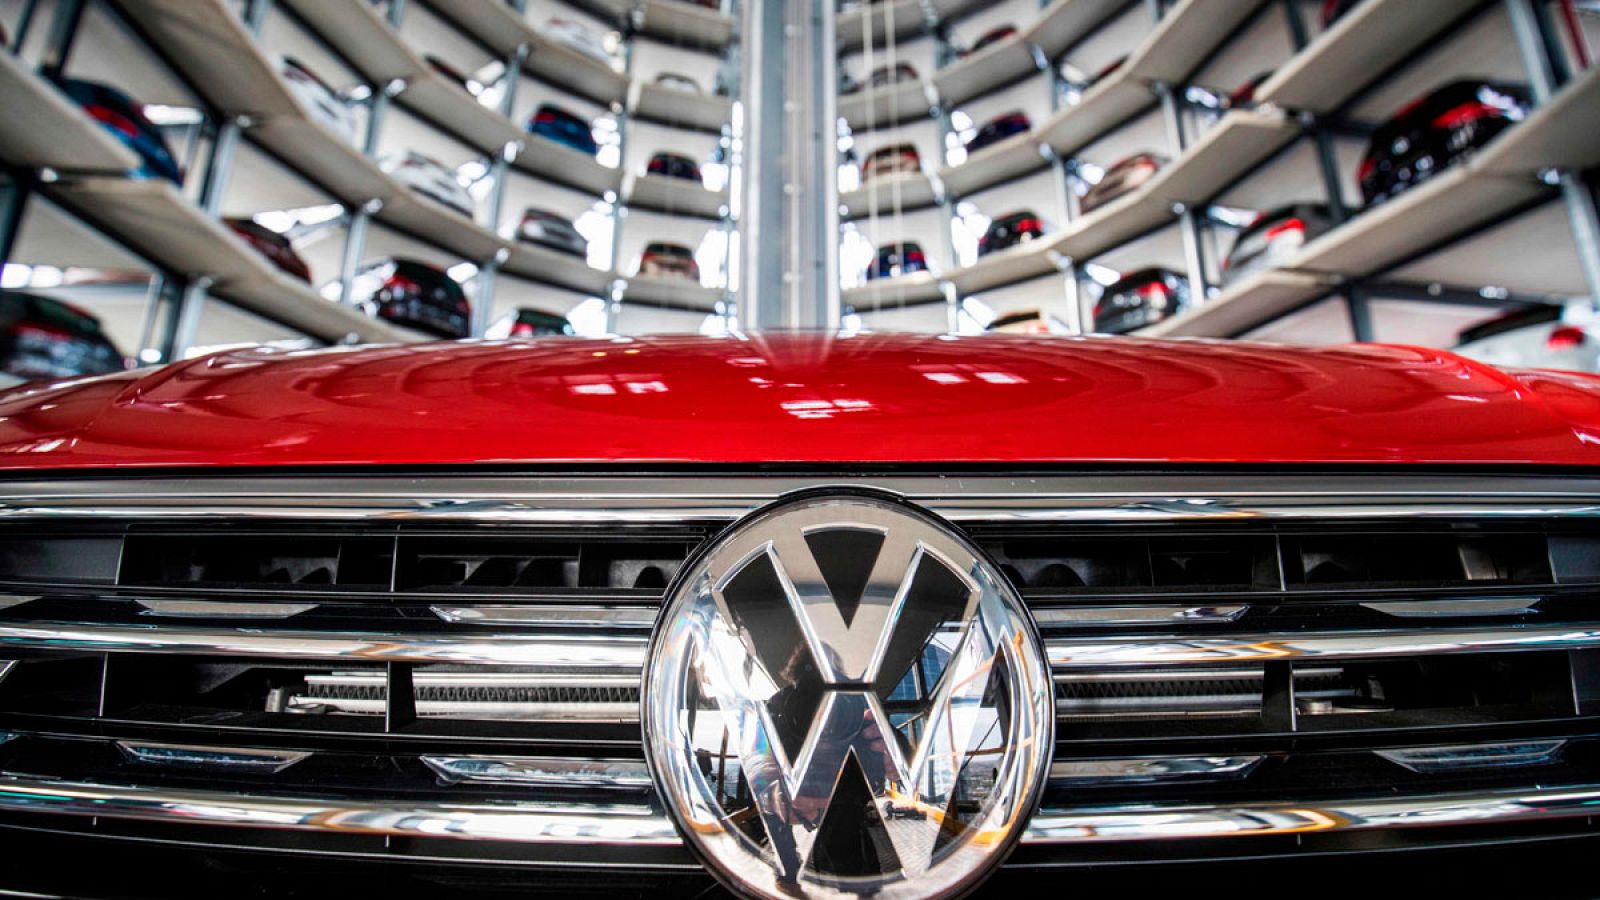 Almacén automático de vehículos de Volkswagen en su planta de Wolfsburg